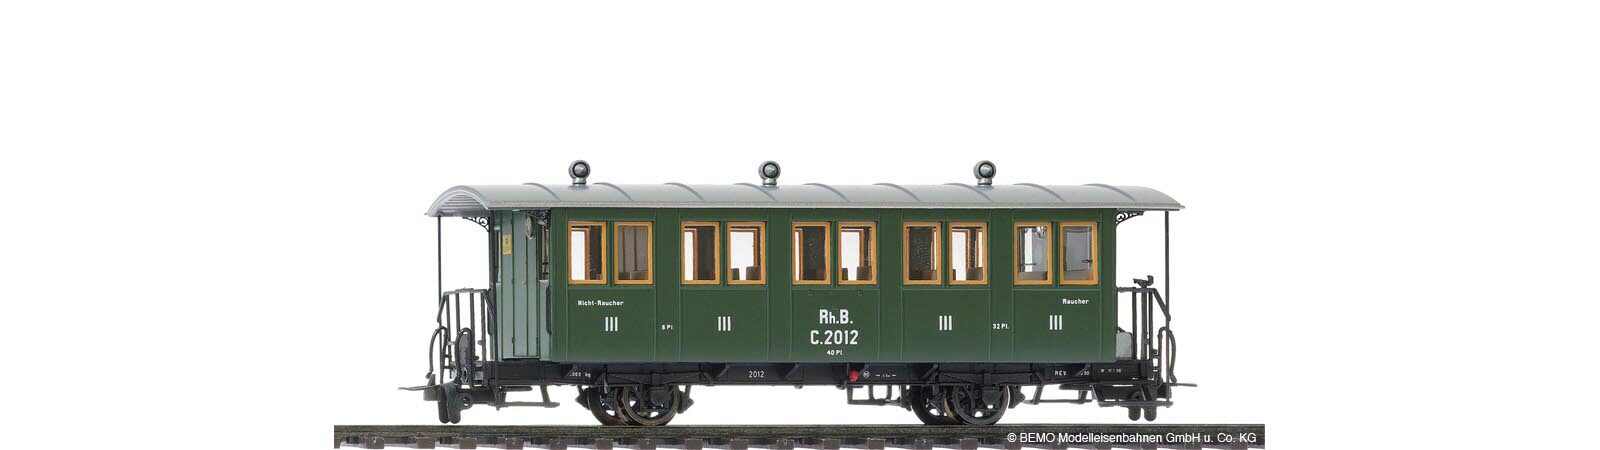 Bemo 3234142 RhB C.2012 Historischer Dampfzugwagen